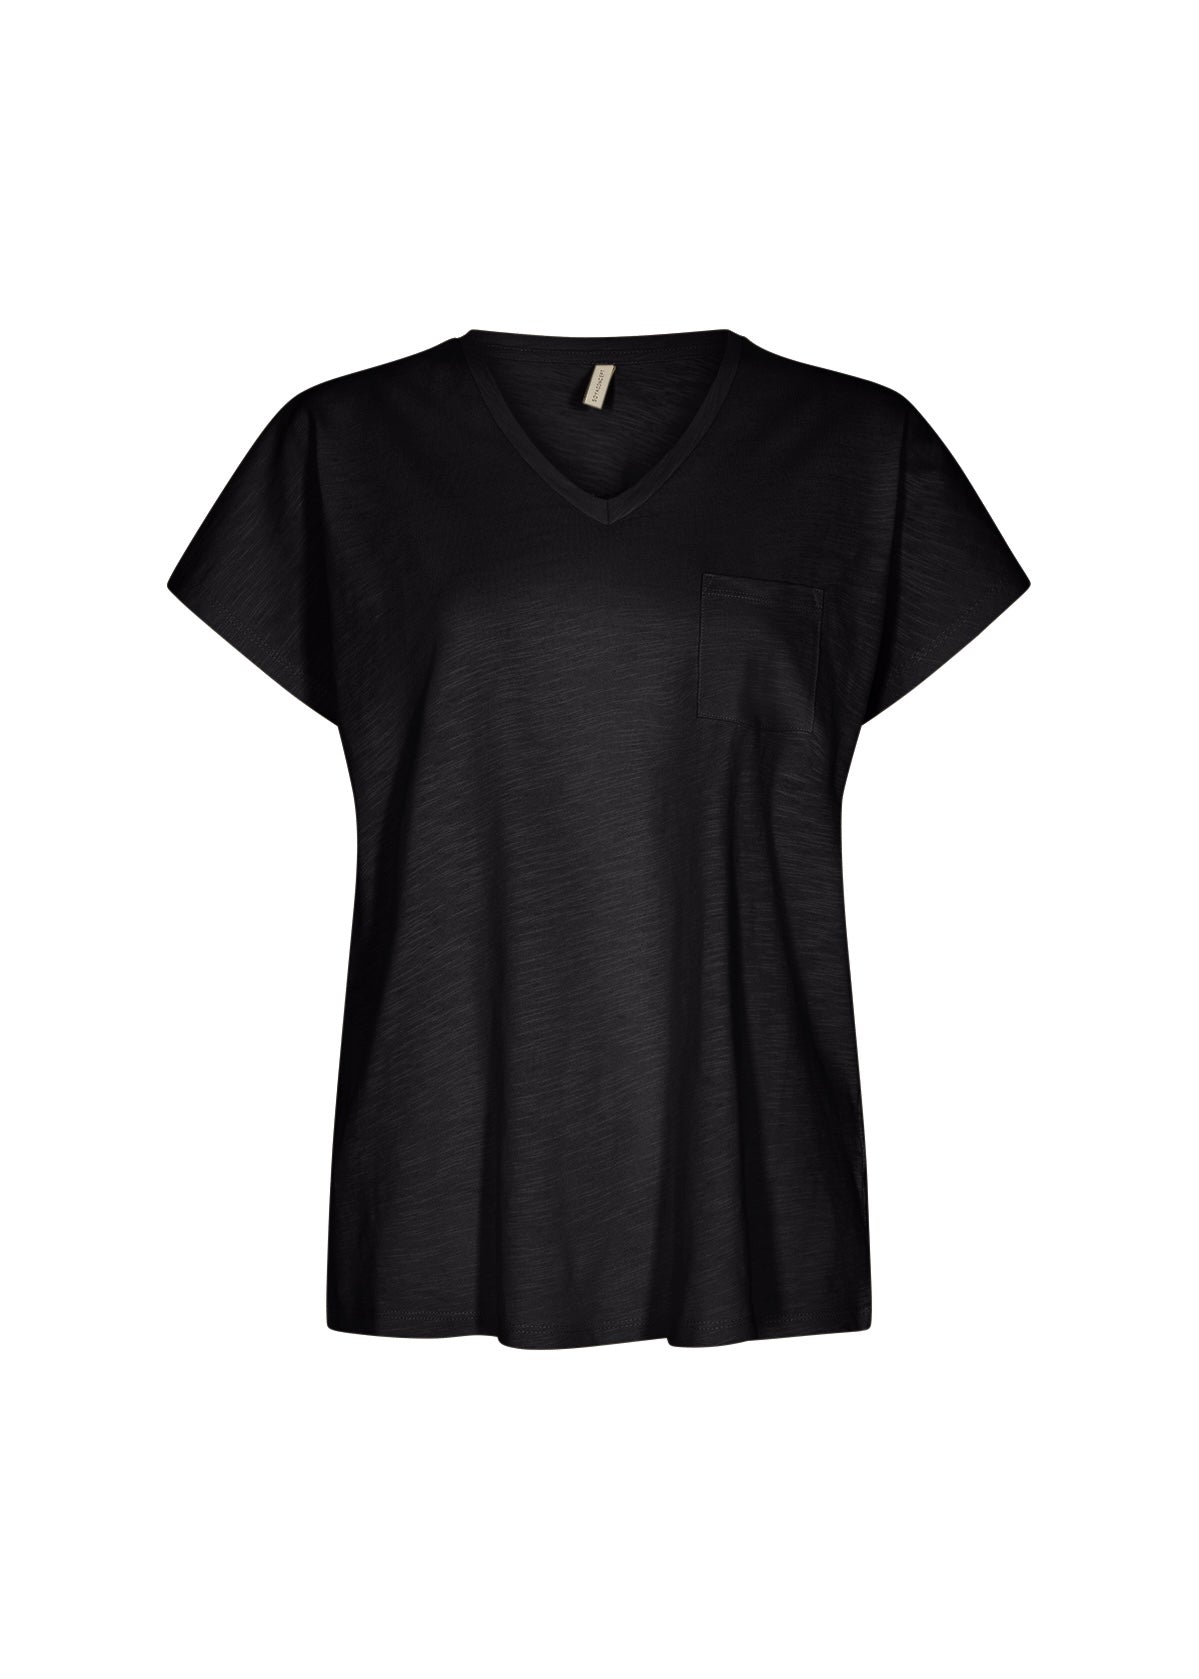 SoyaConcept Babette 32 T Shirt - Black